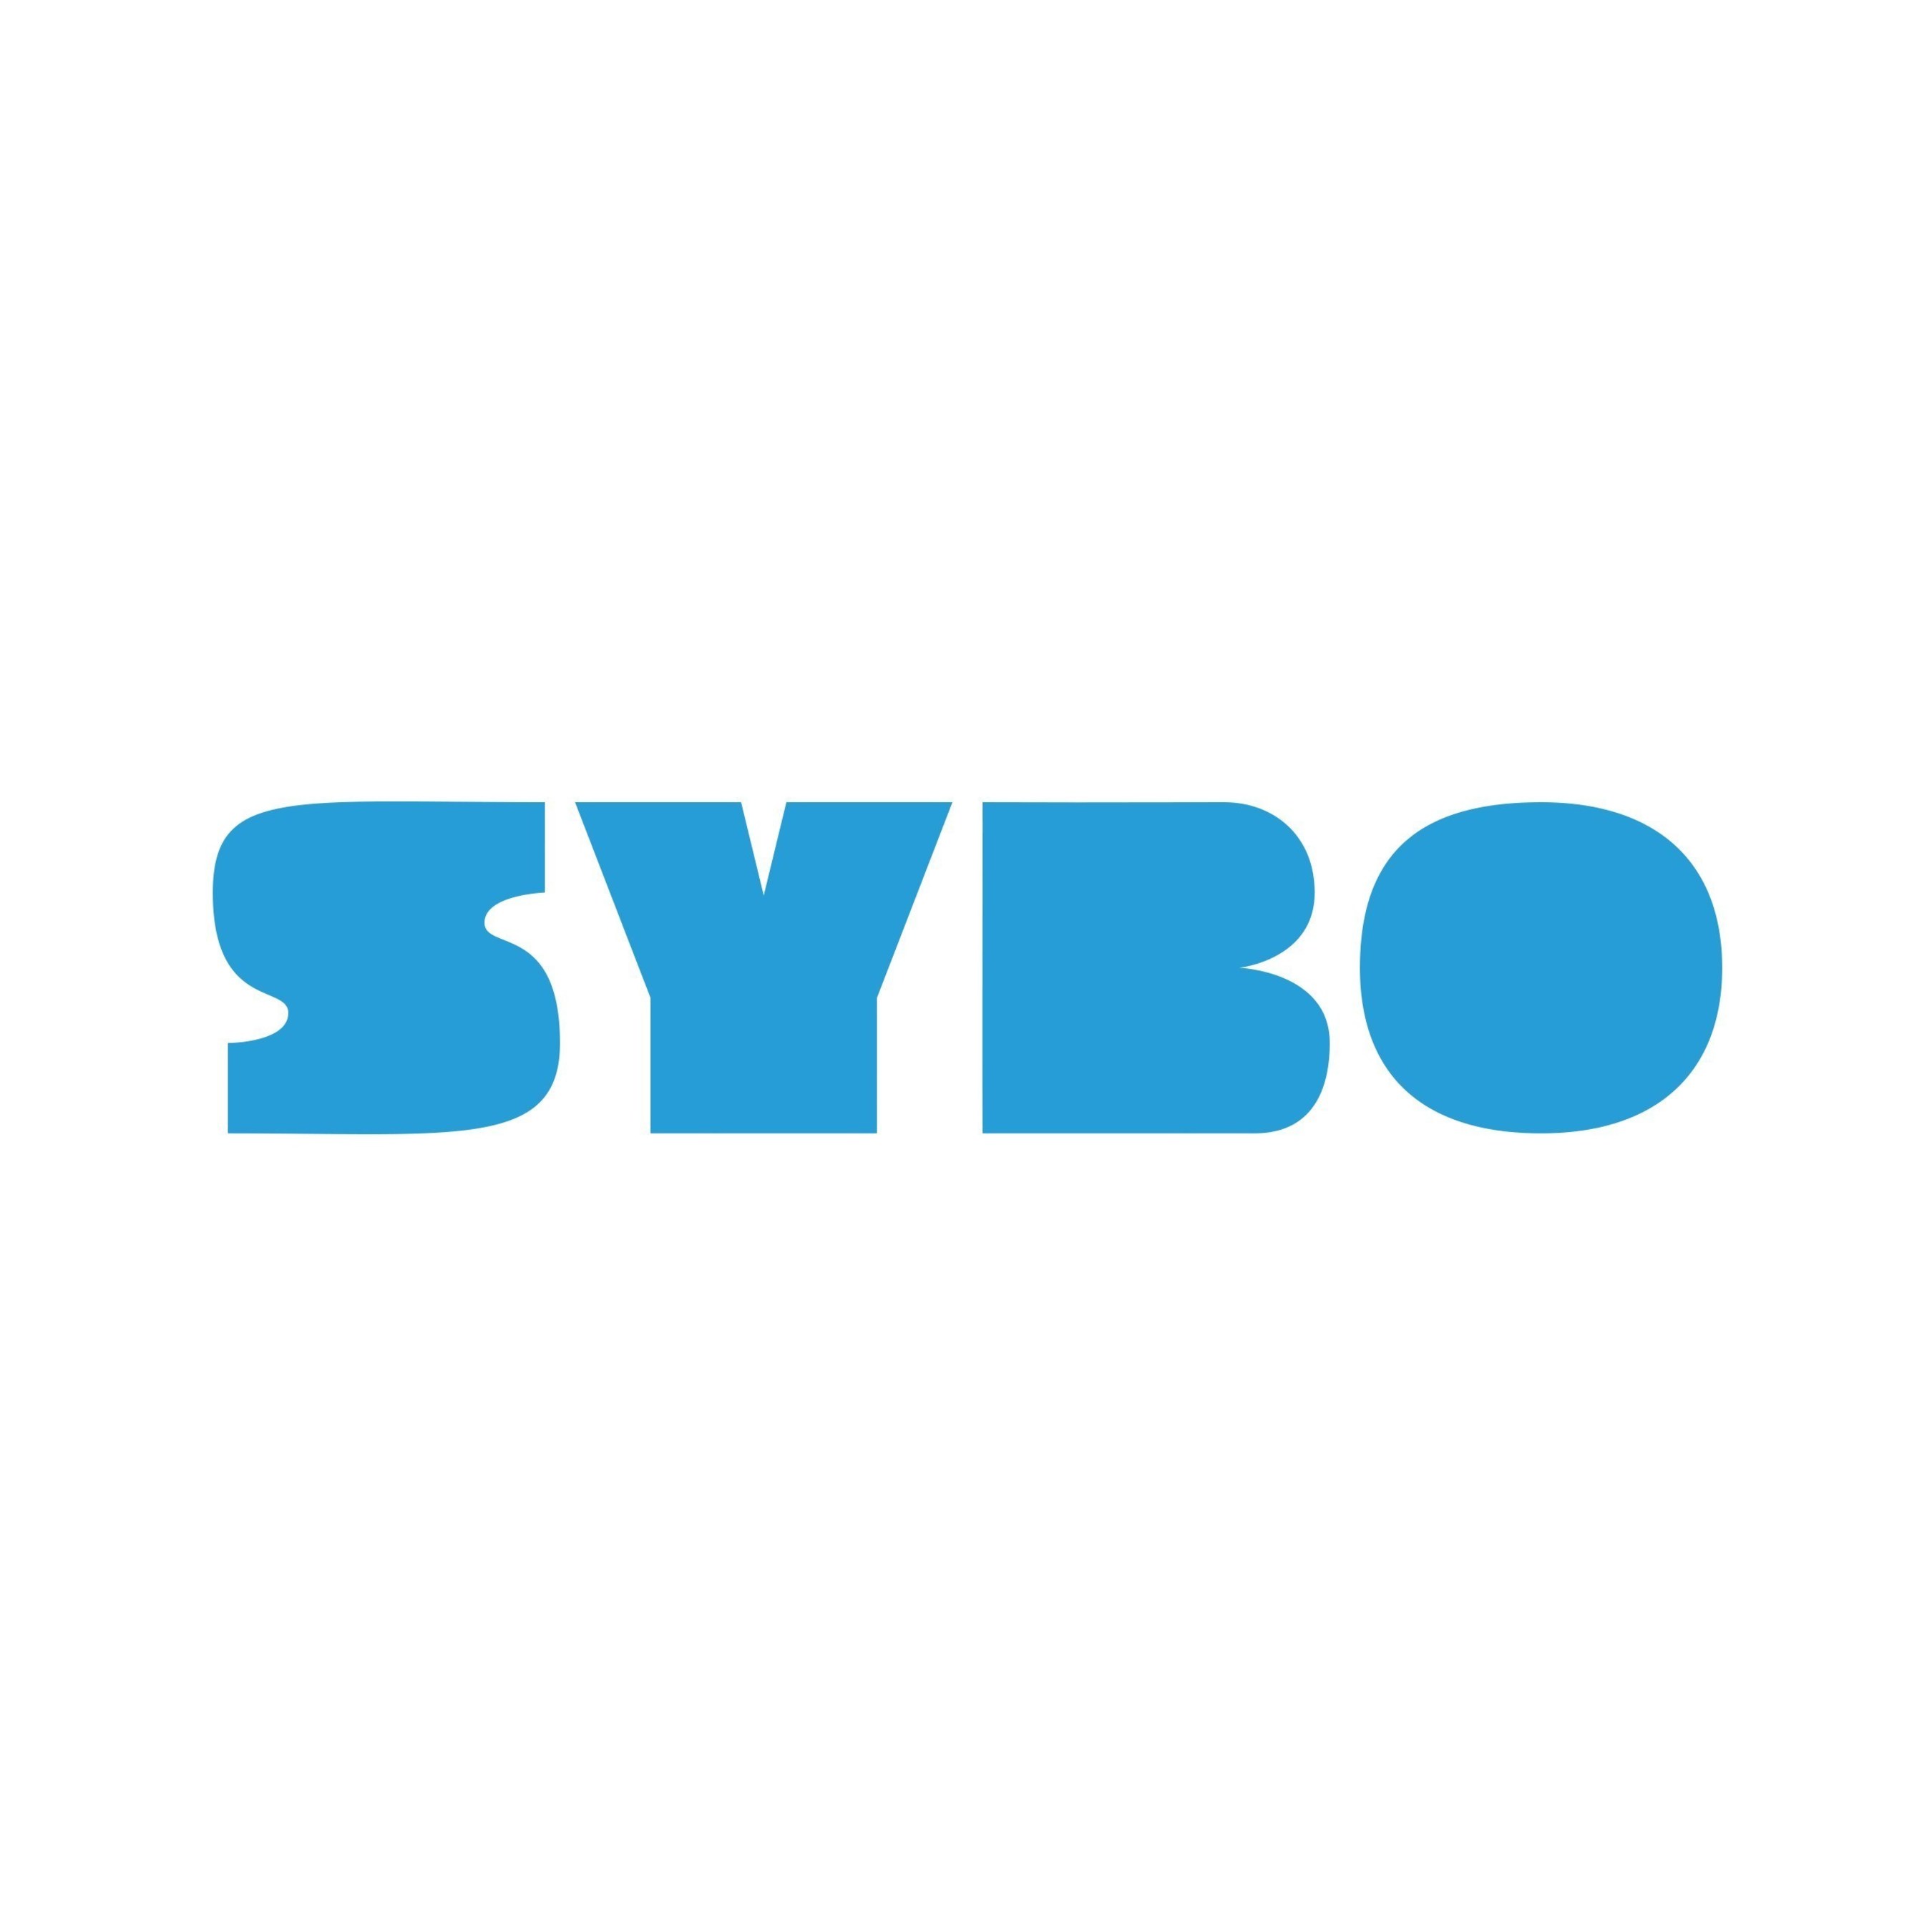 Miniclip will acquire Subway Surfers maker Sybo